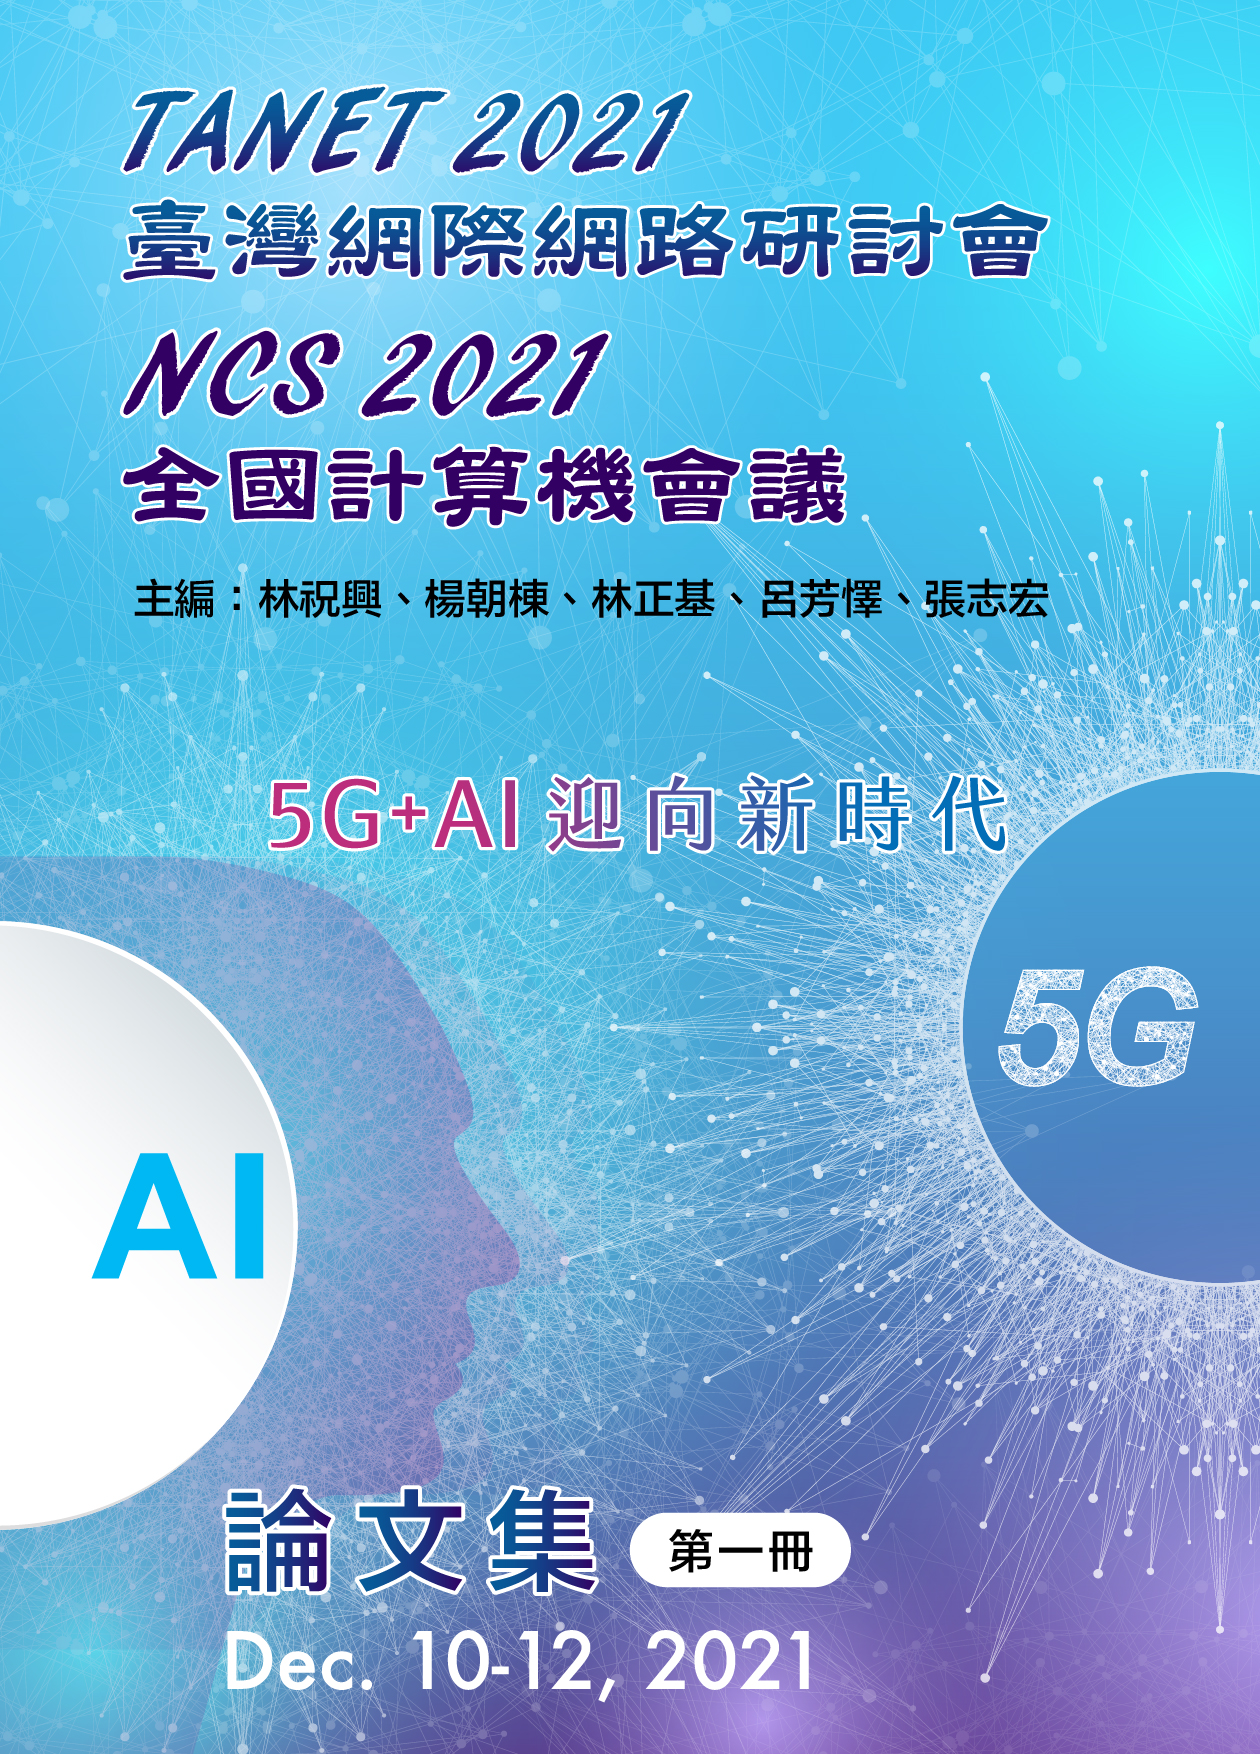 TANET 2021 臺灣網際網路研討會 NCS 2021全國計算機會議論文集